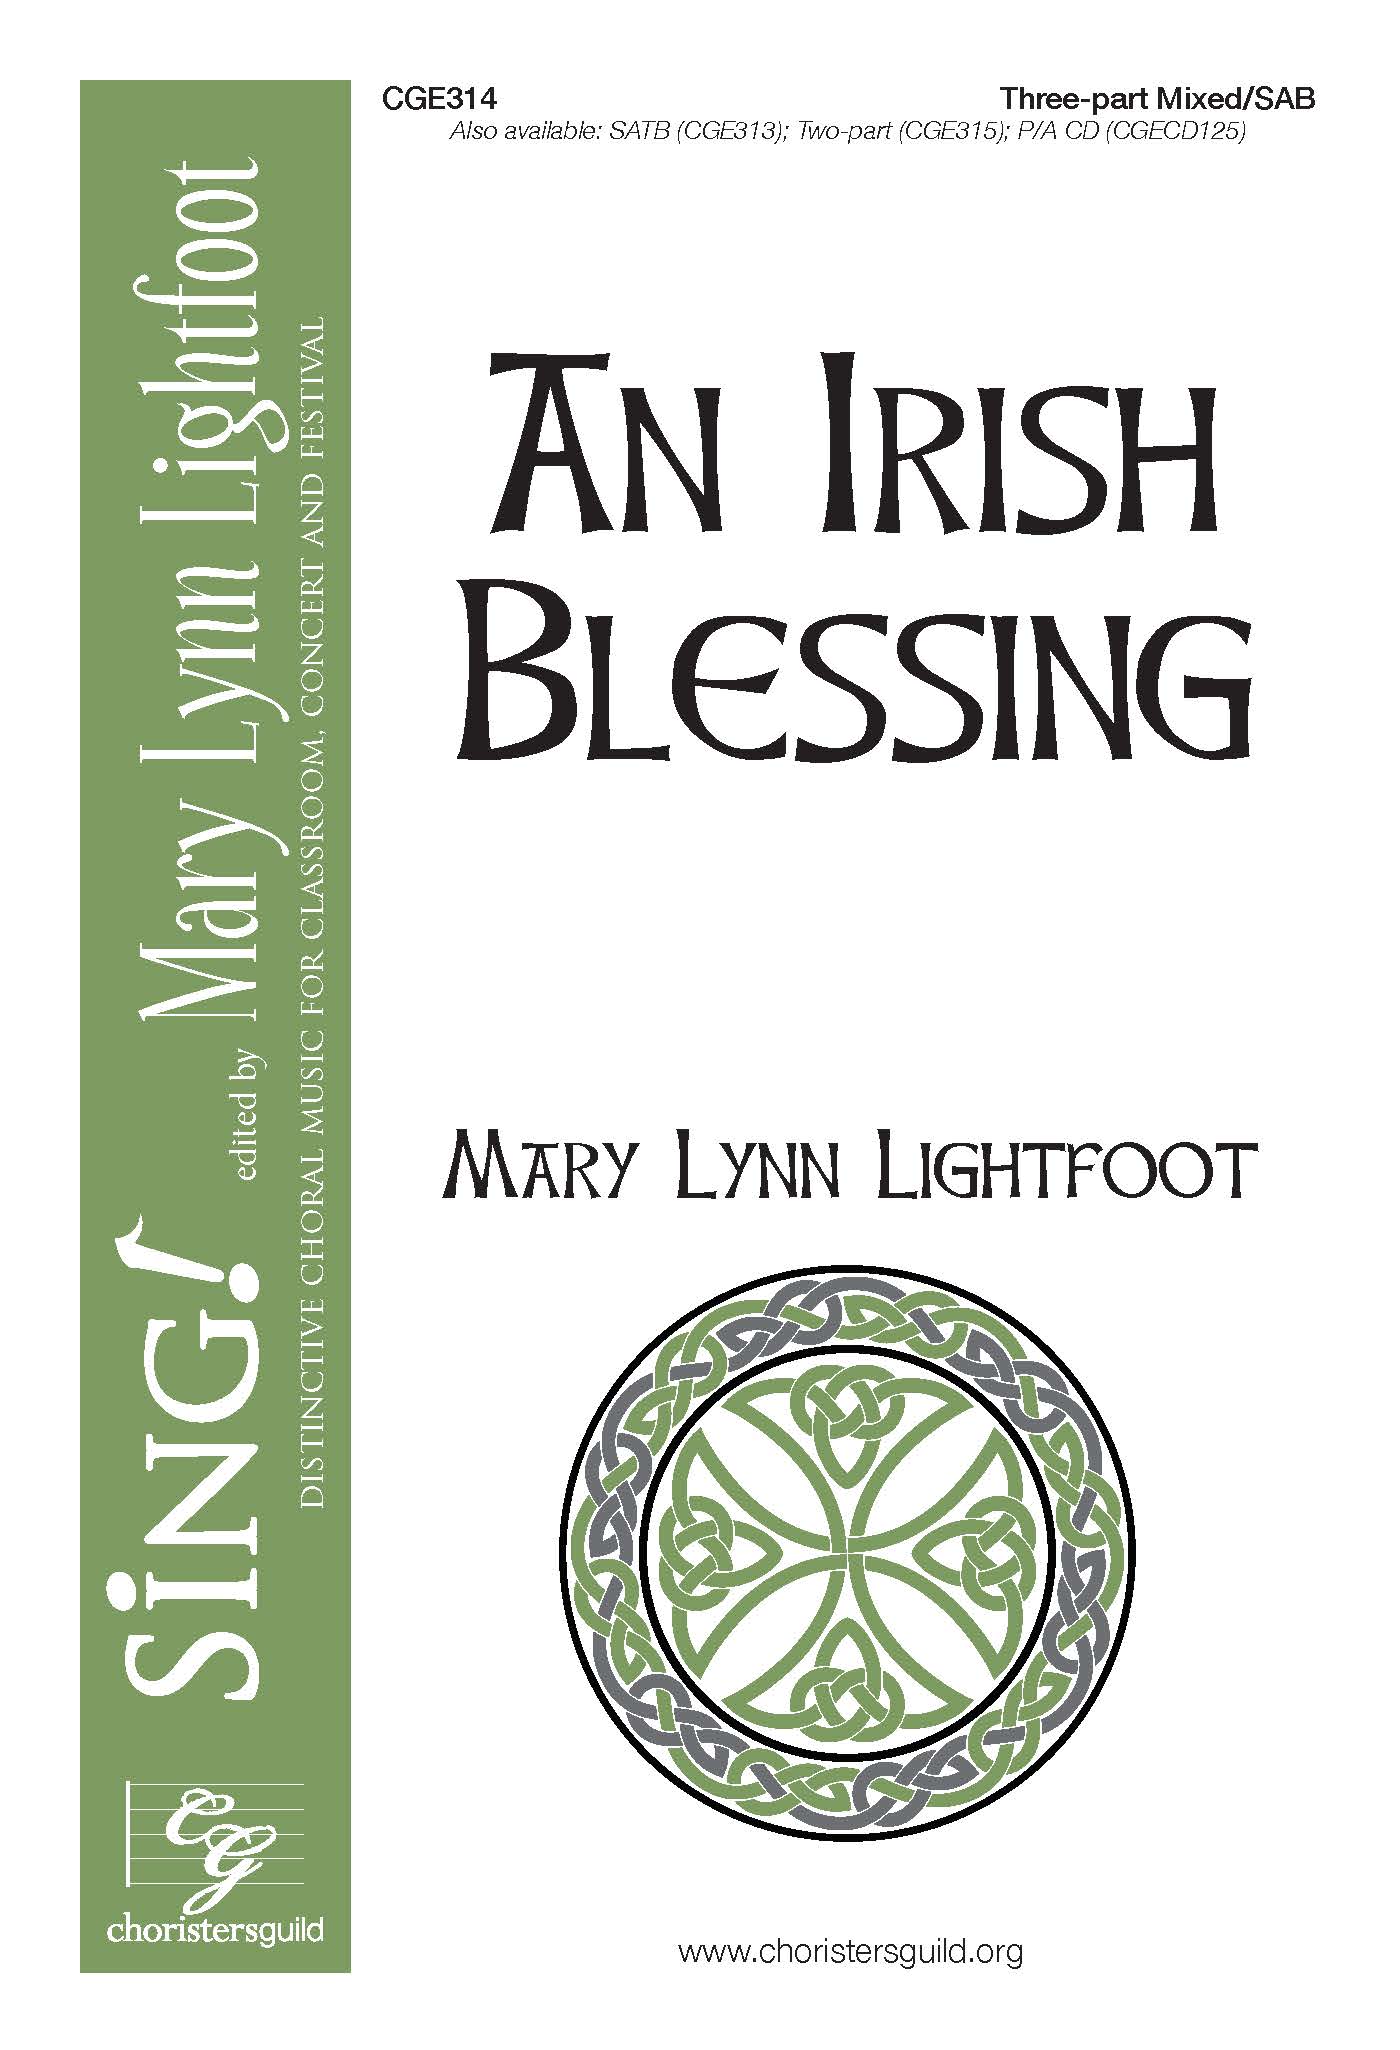 An Irish Blessing - Three-part Mixed/SAB